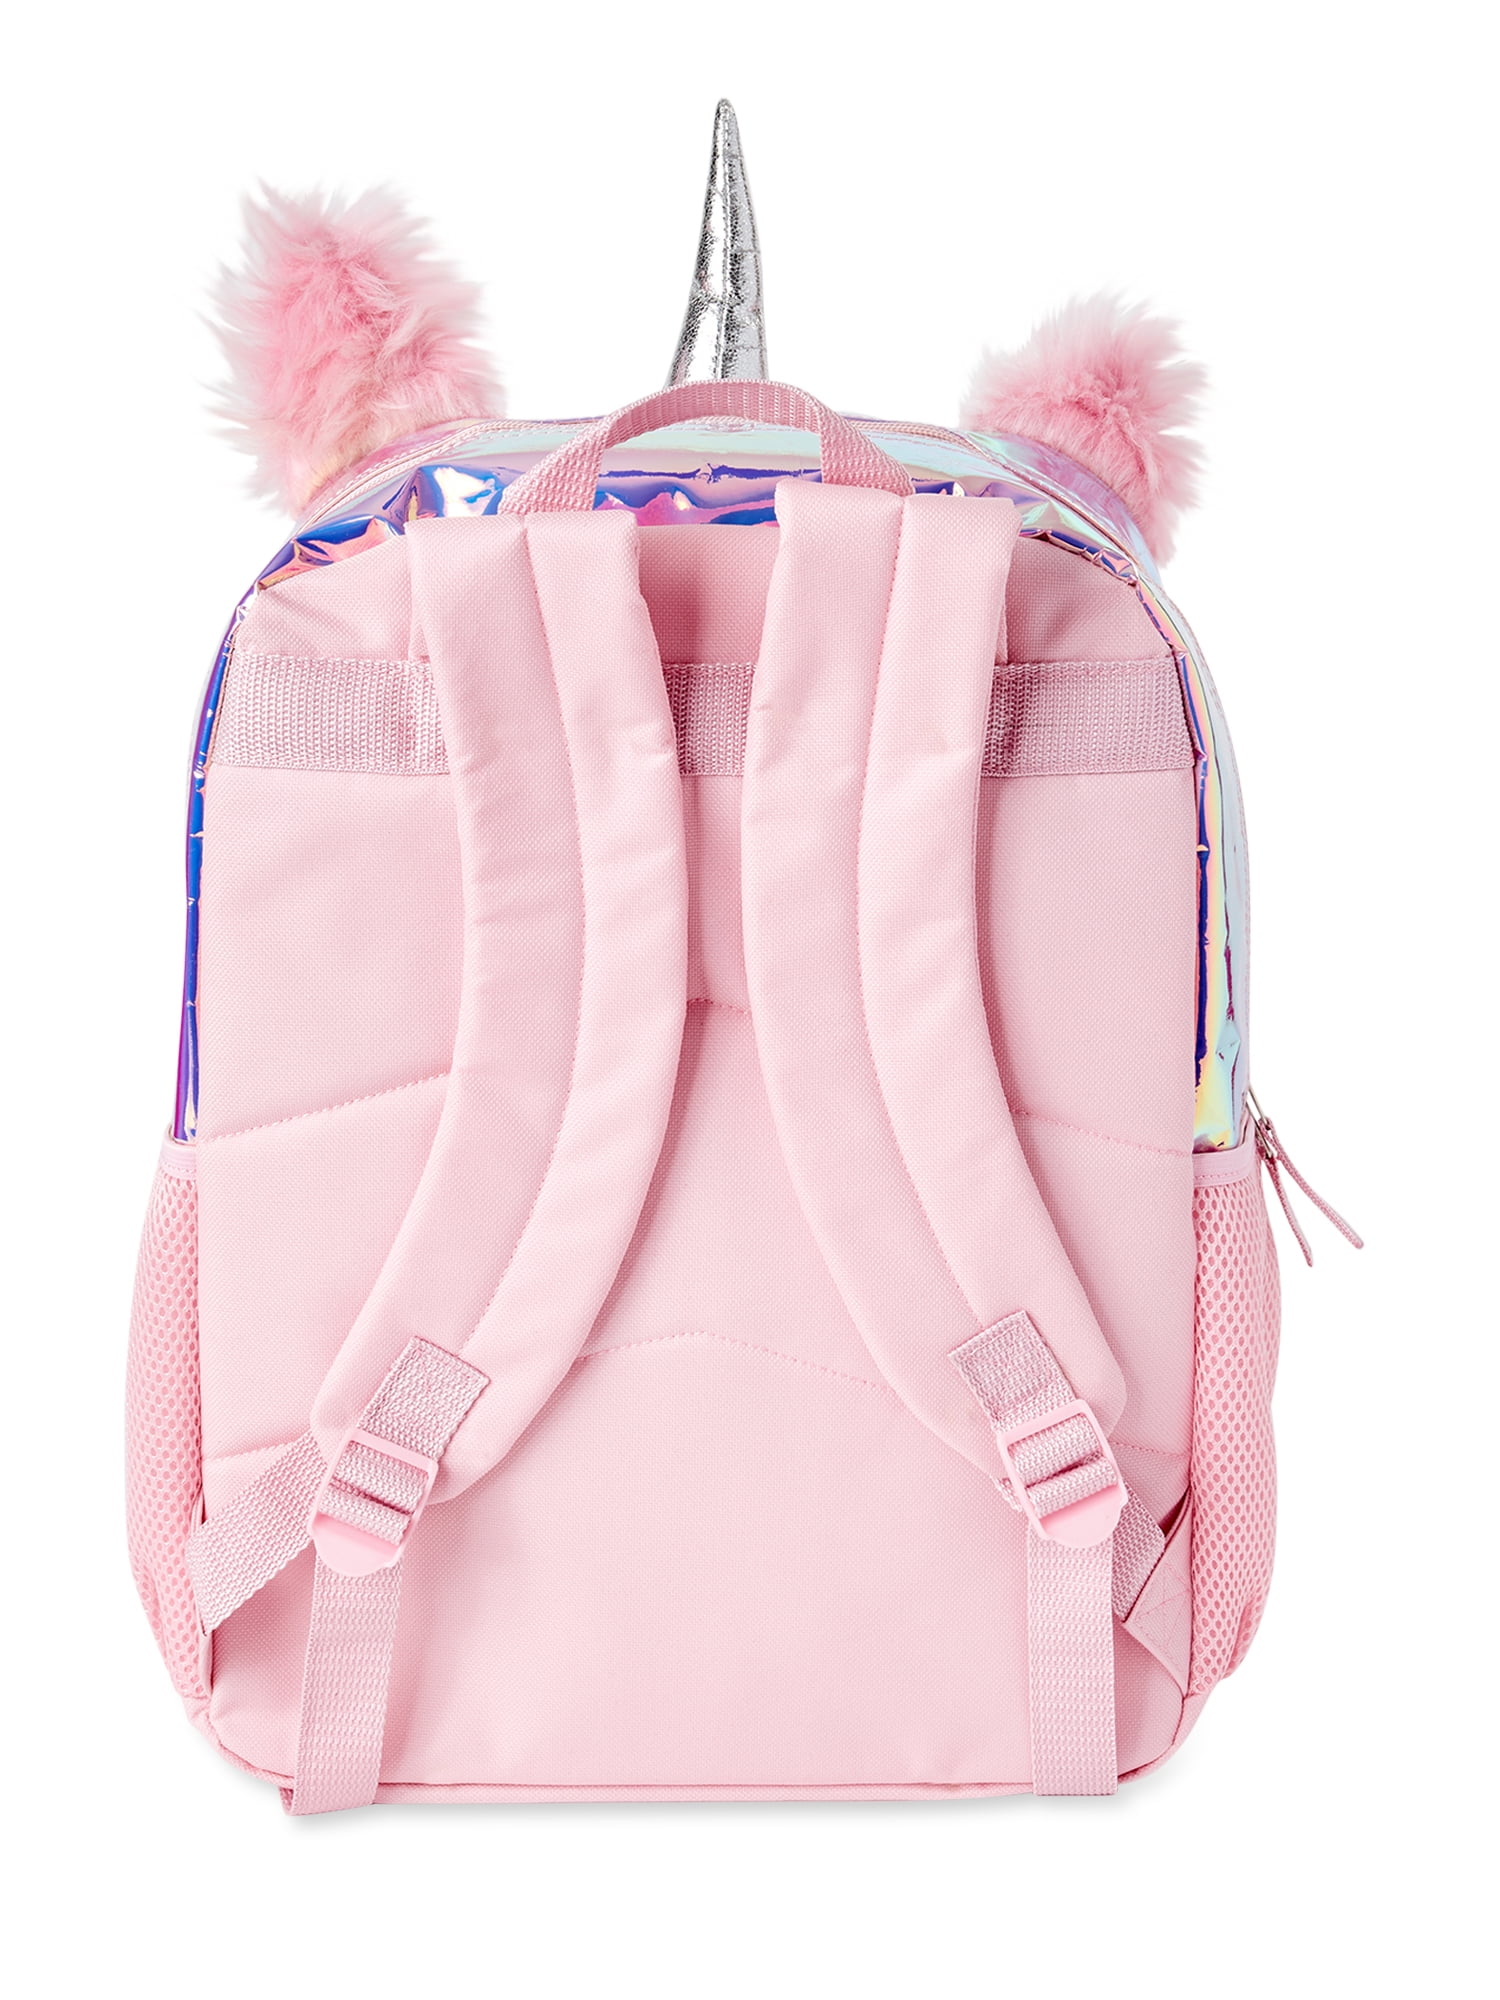 Crossbody Bag Purse for Girls, Lightweight Small Messenger Shoulder Bag  Gift for Preteen/Teen Little Kids Unicorn - Walmart.ca